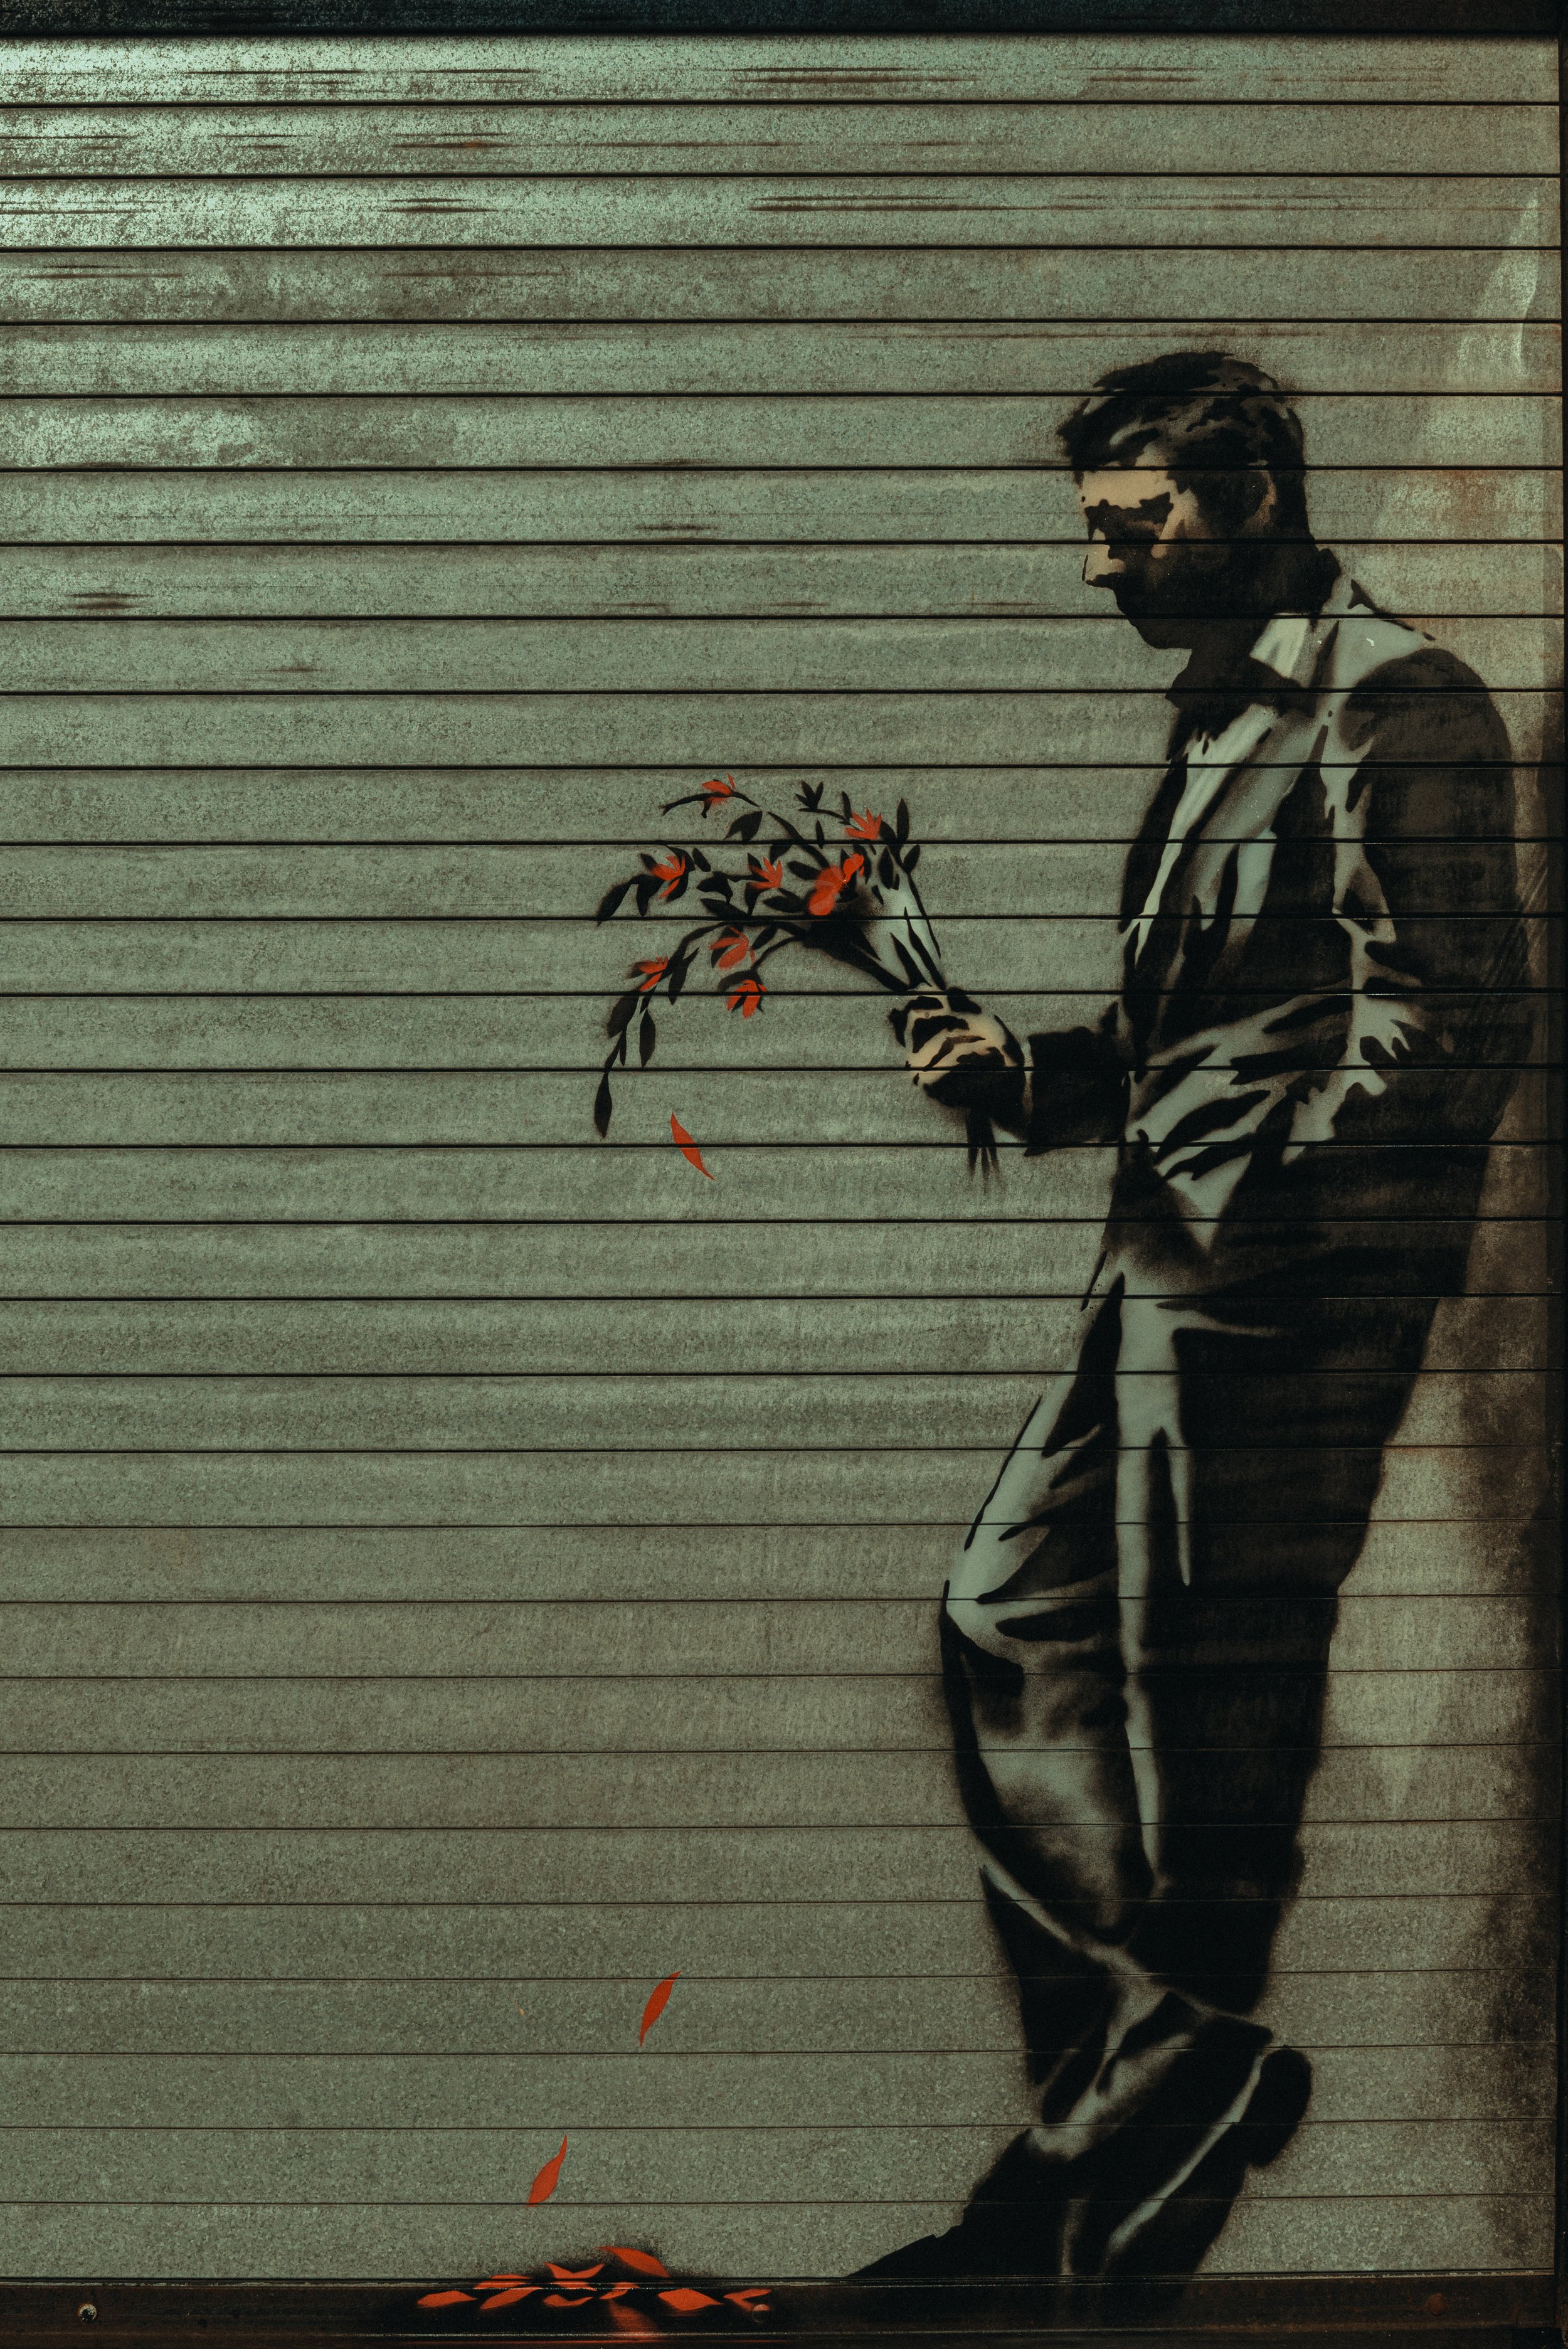 2013-10-24 Banksy Mural at Hustler Club NYC-5.jpg